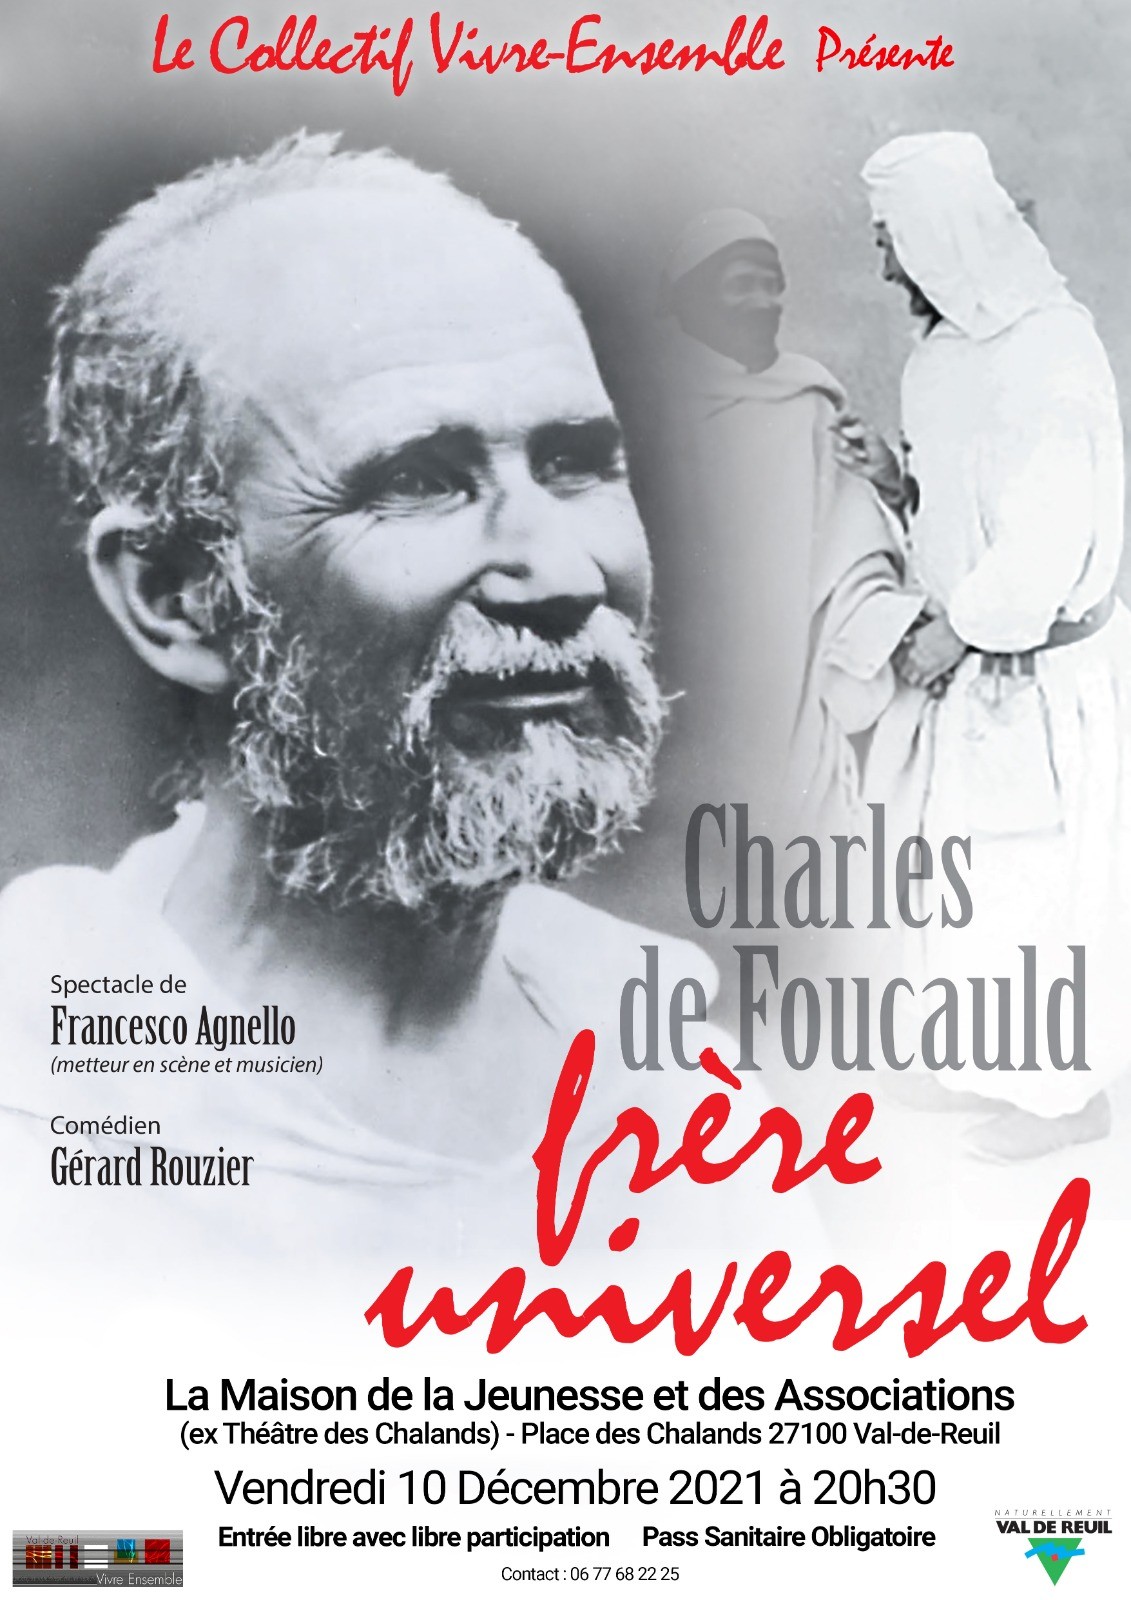 Maison de la Jeunesse et des Associations : “Charles de Foucauld, frère universel”